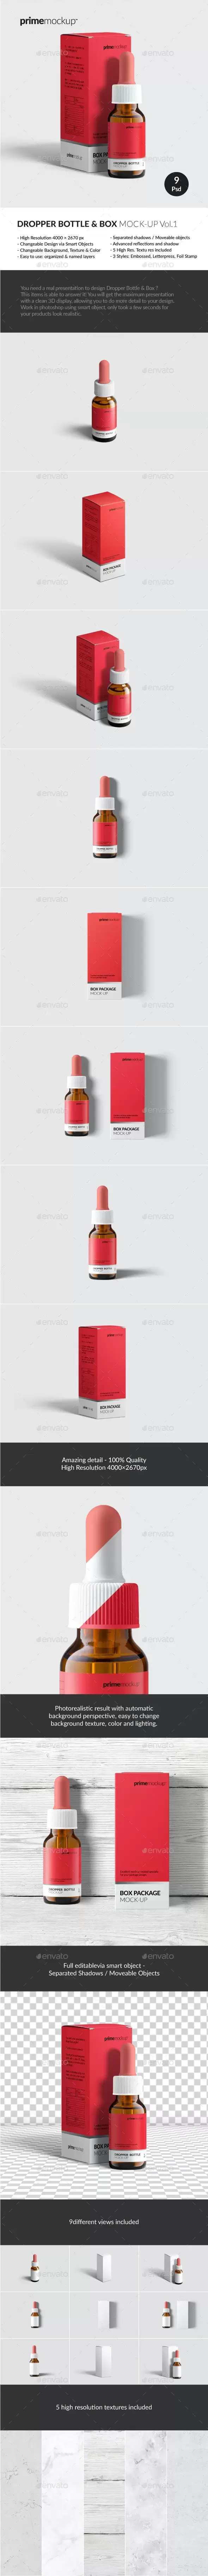 药物滴管瓶和纸盒包装样机套装[1.21GB,PSD]免费下载插图